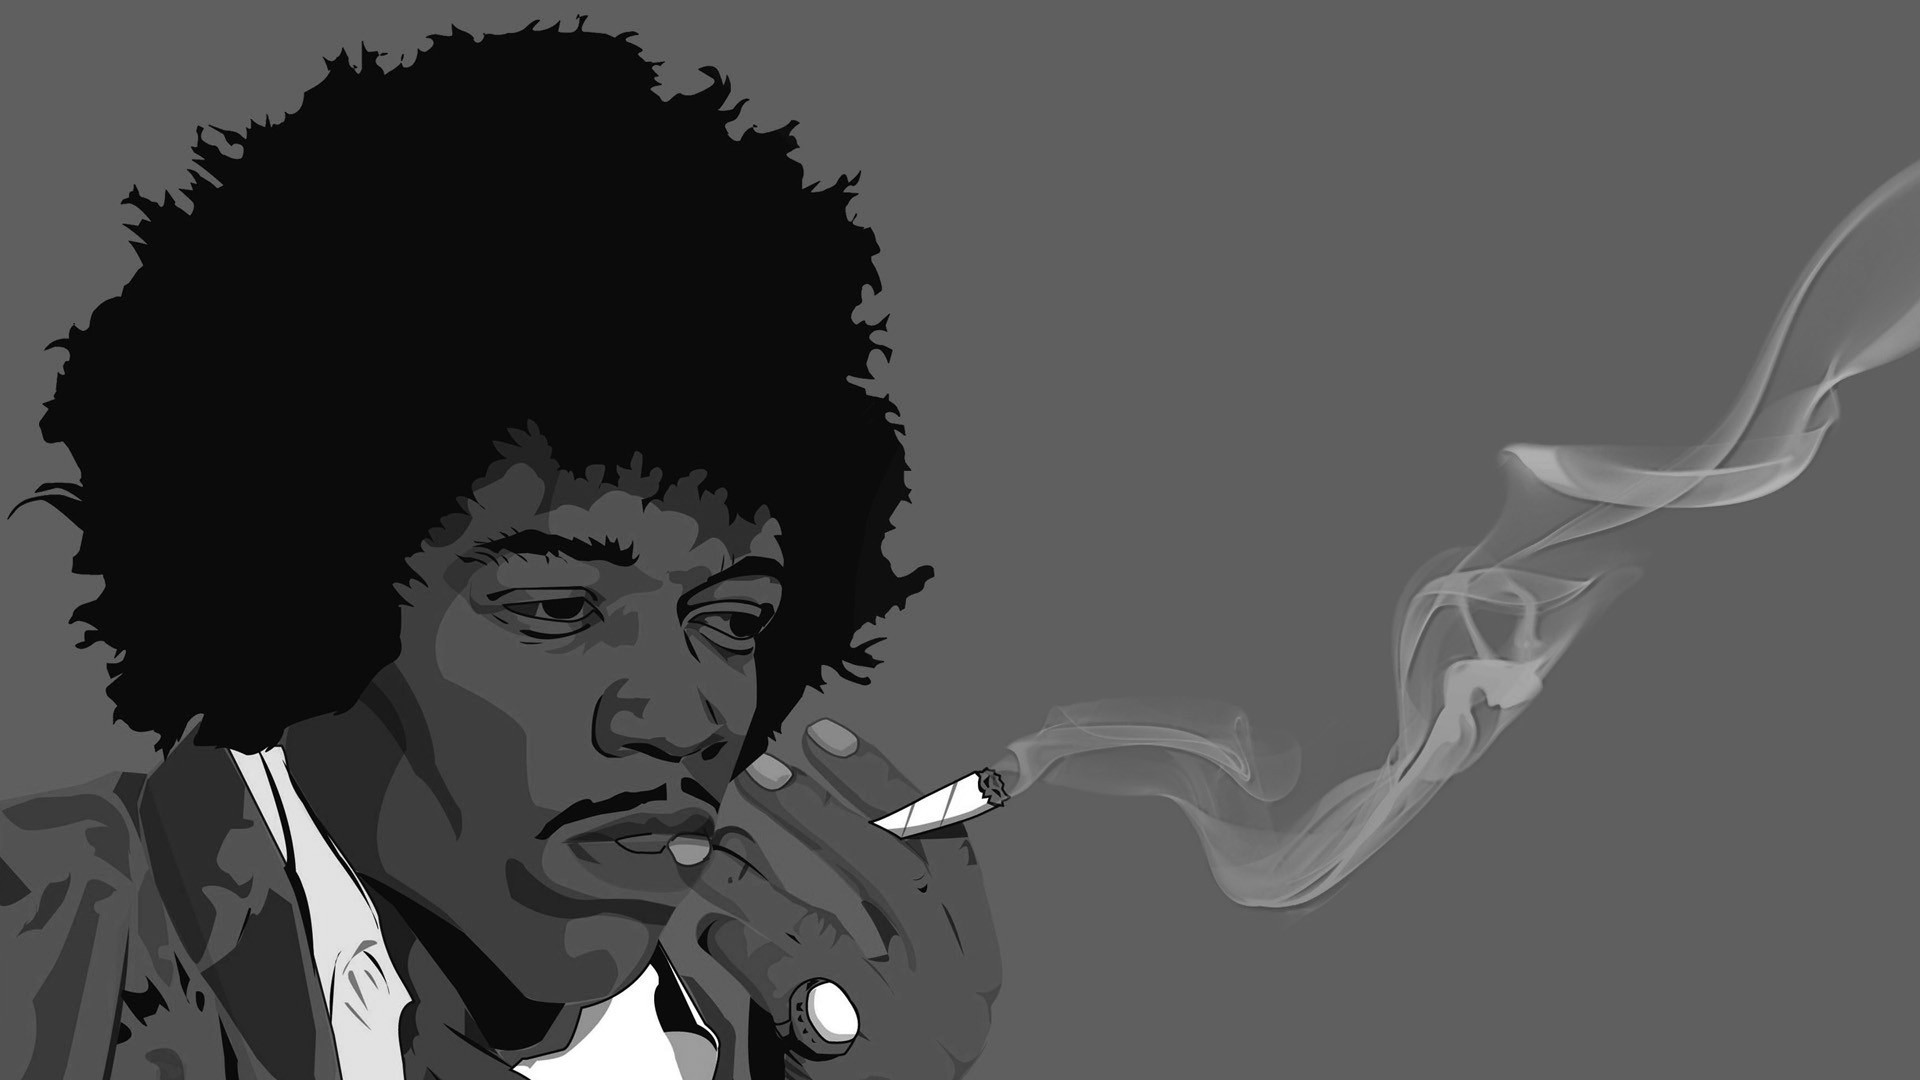 Music Jimi Hendrix 1920x1080